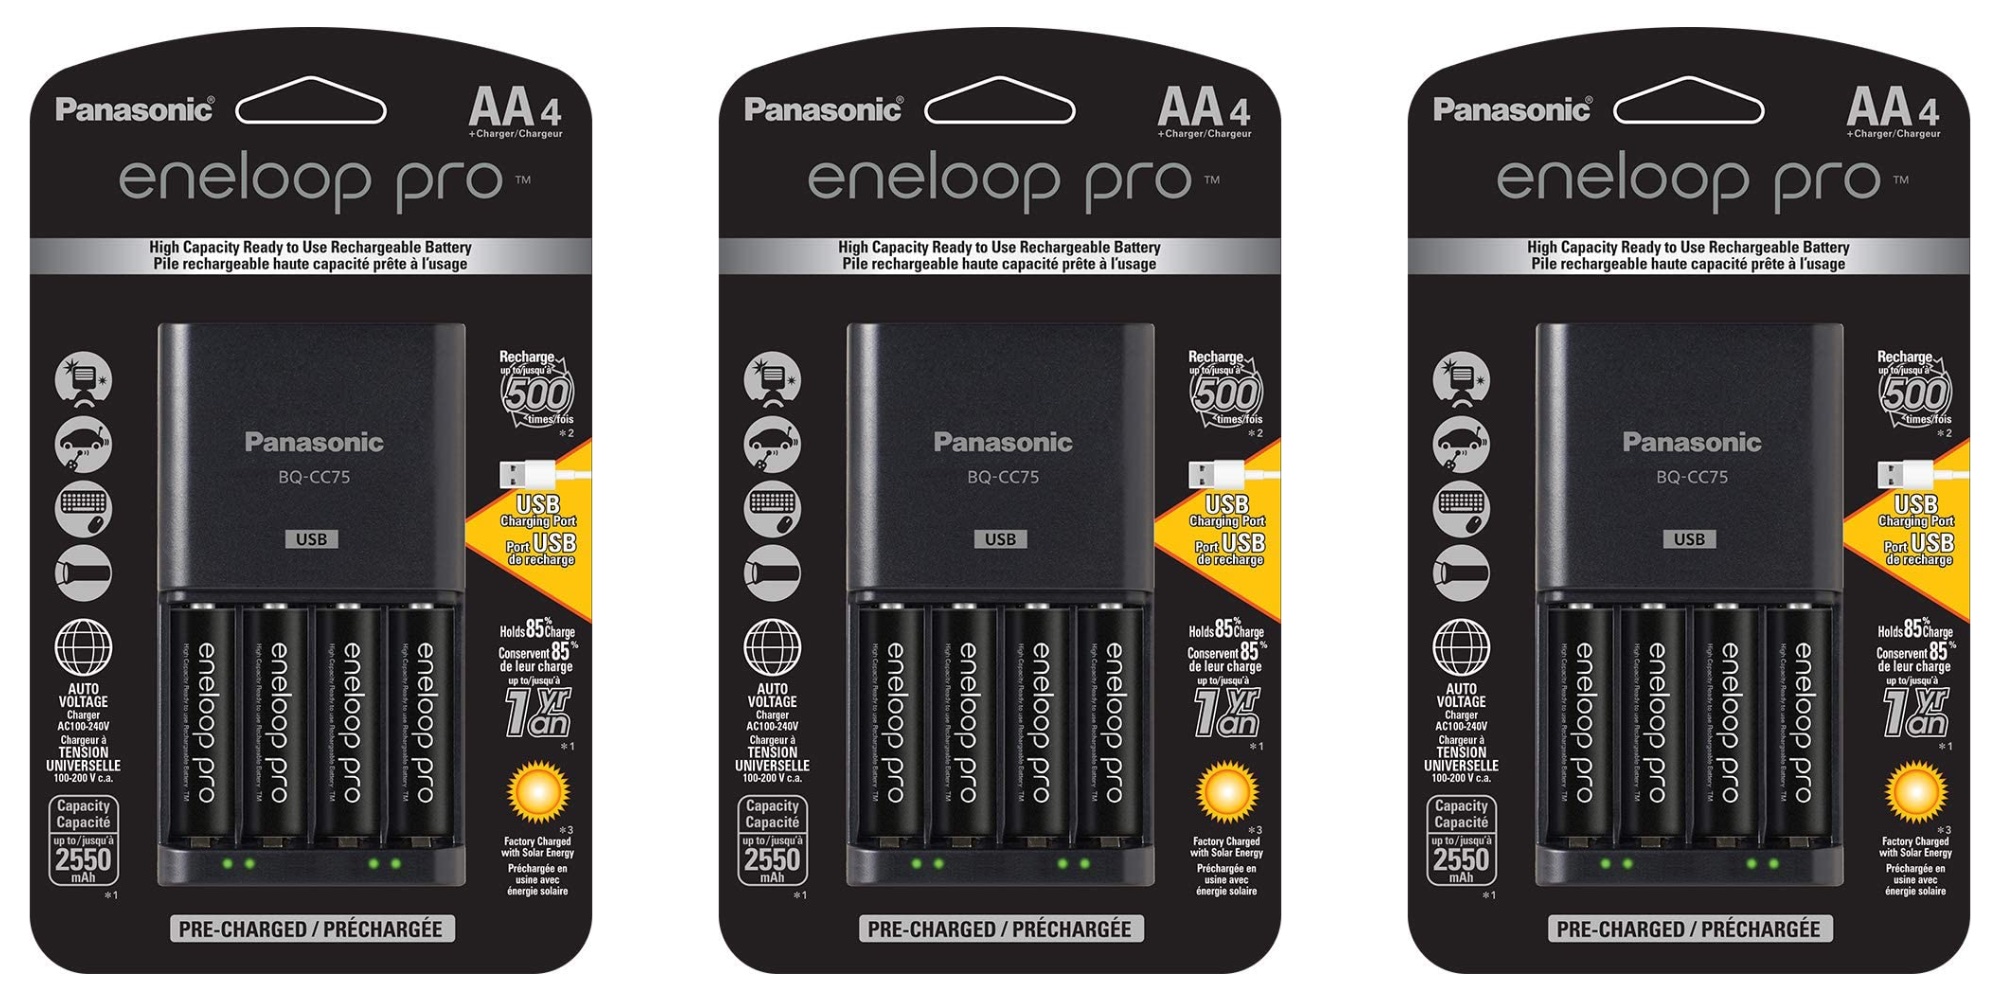 Panasonic eneloop Pro rechargeable AA and AAA battery bundles